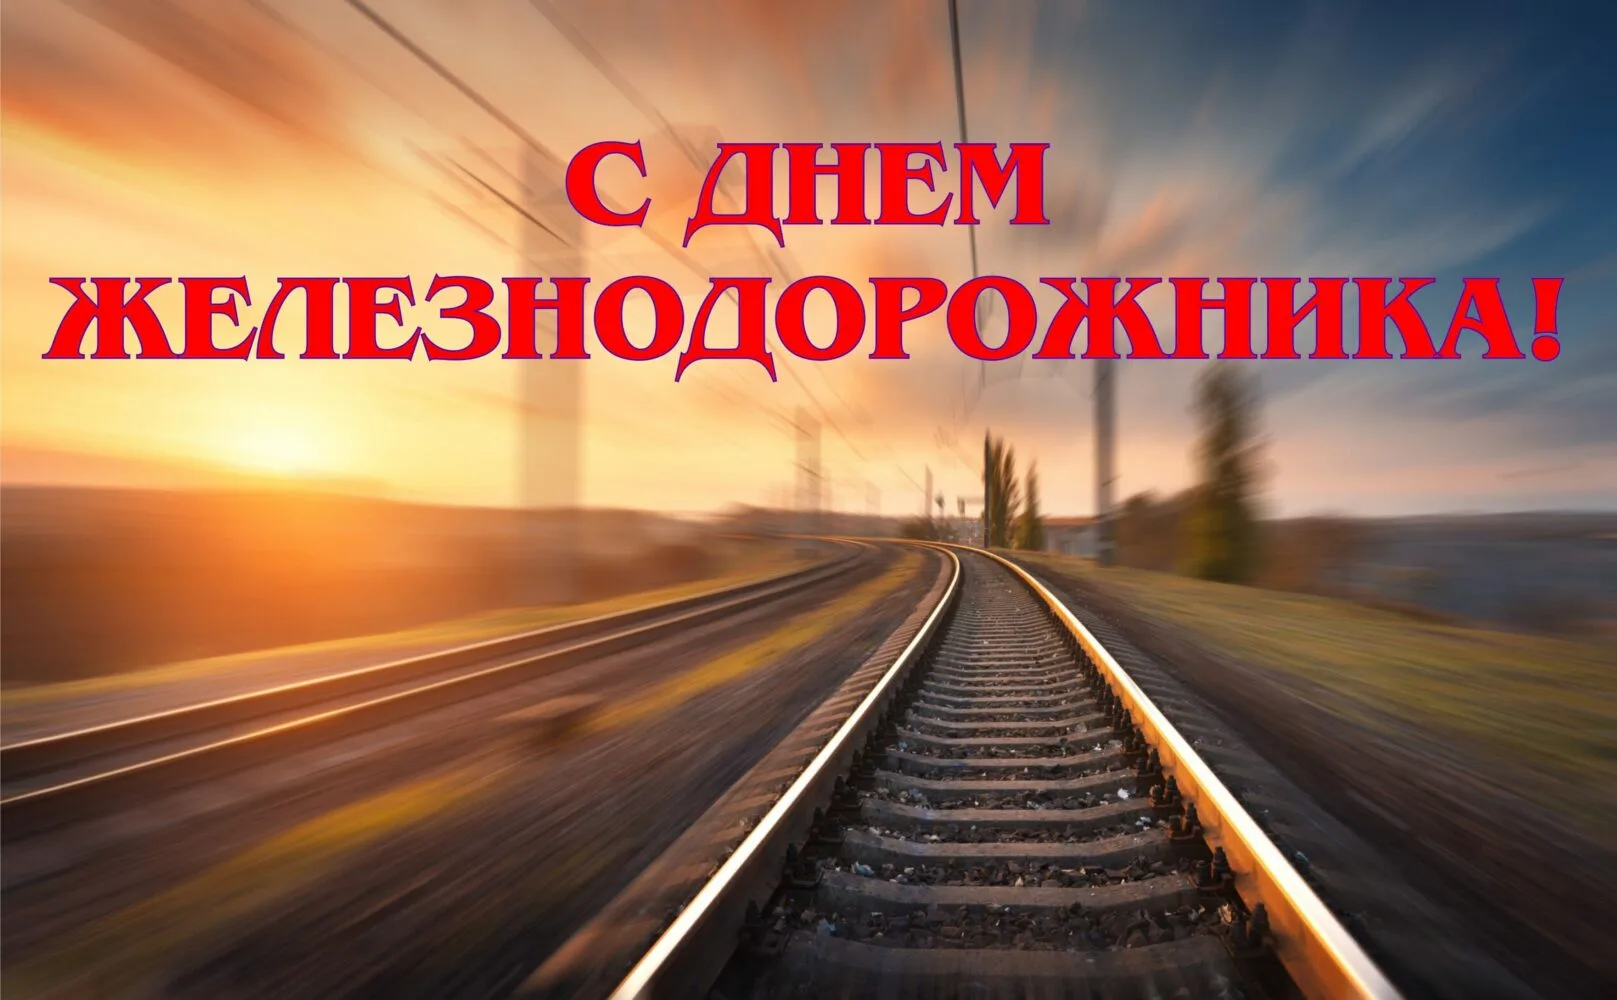 Фото Поздравление с днем железнодорожника Украины #75